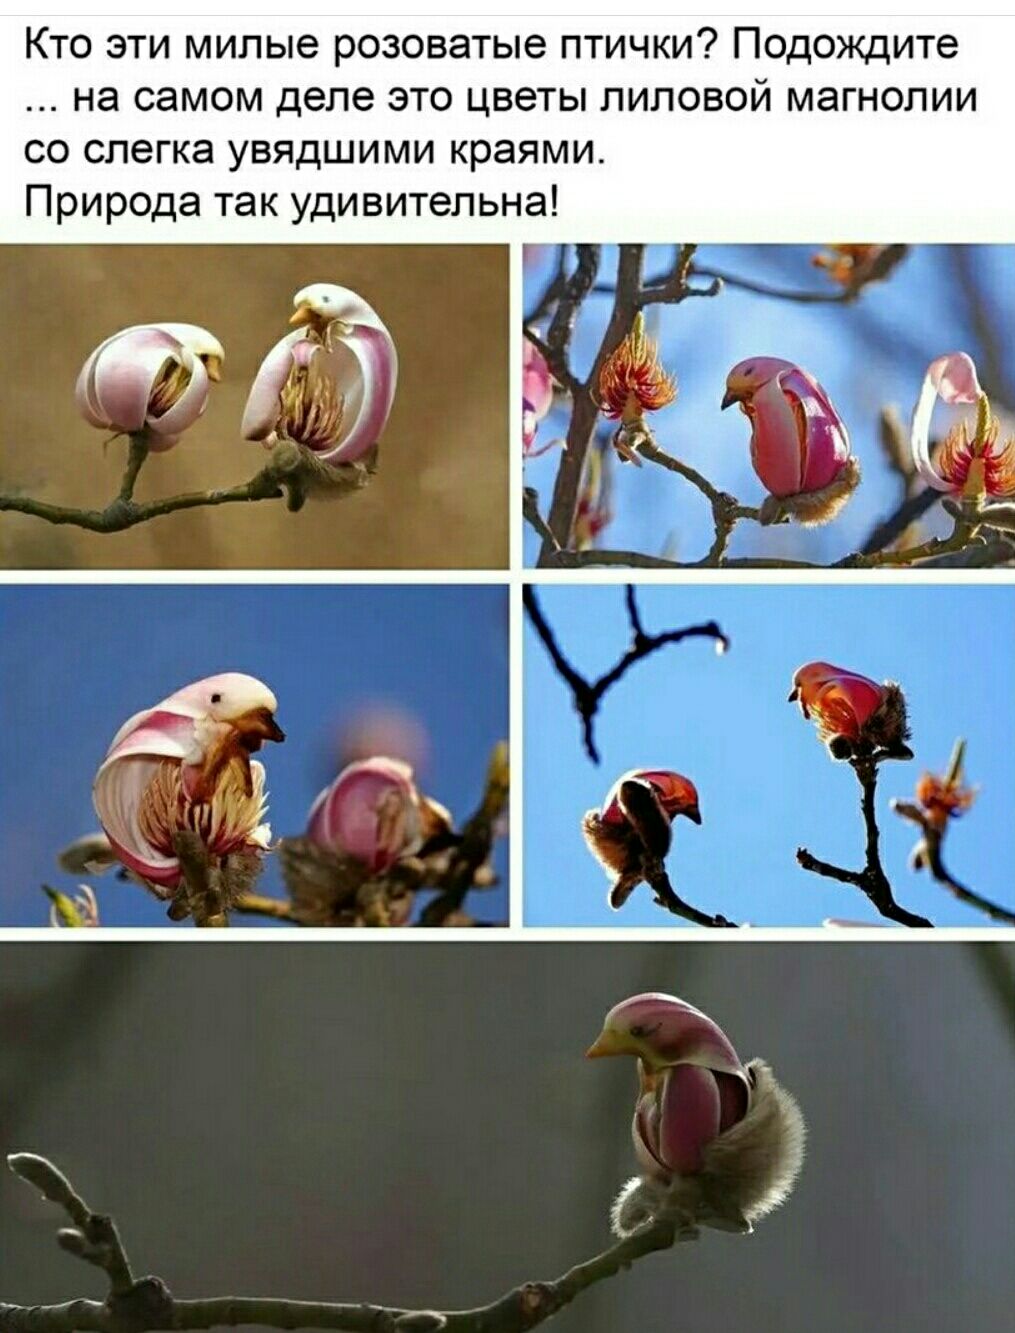 Кто эти милые розоватые птички Подожцте на самом ДЕЛЕ ЭТО цветы ПИПОВОЙ магнолии С СПЕГКЗ УЕЯДШИМИ краями Природа так удивительна